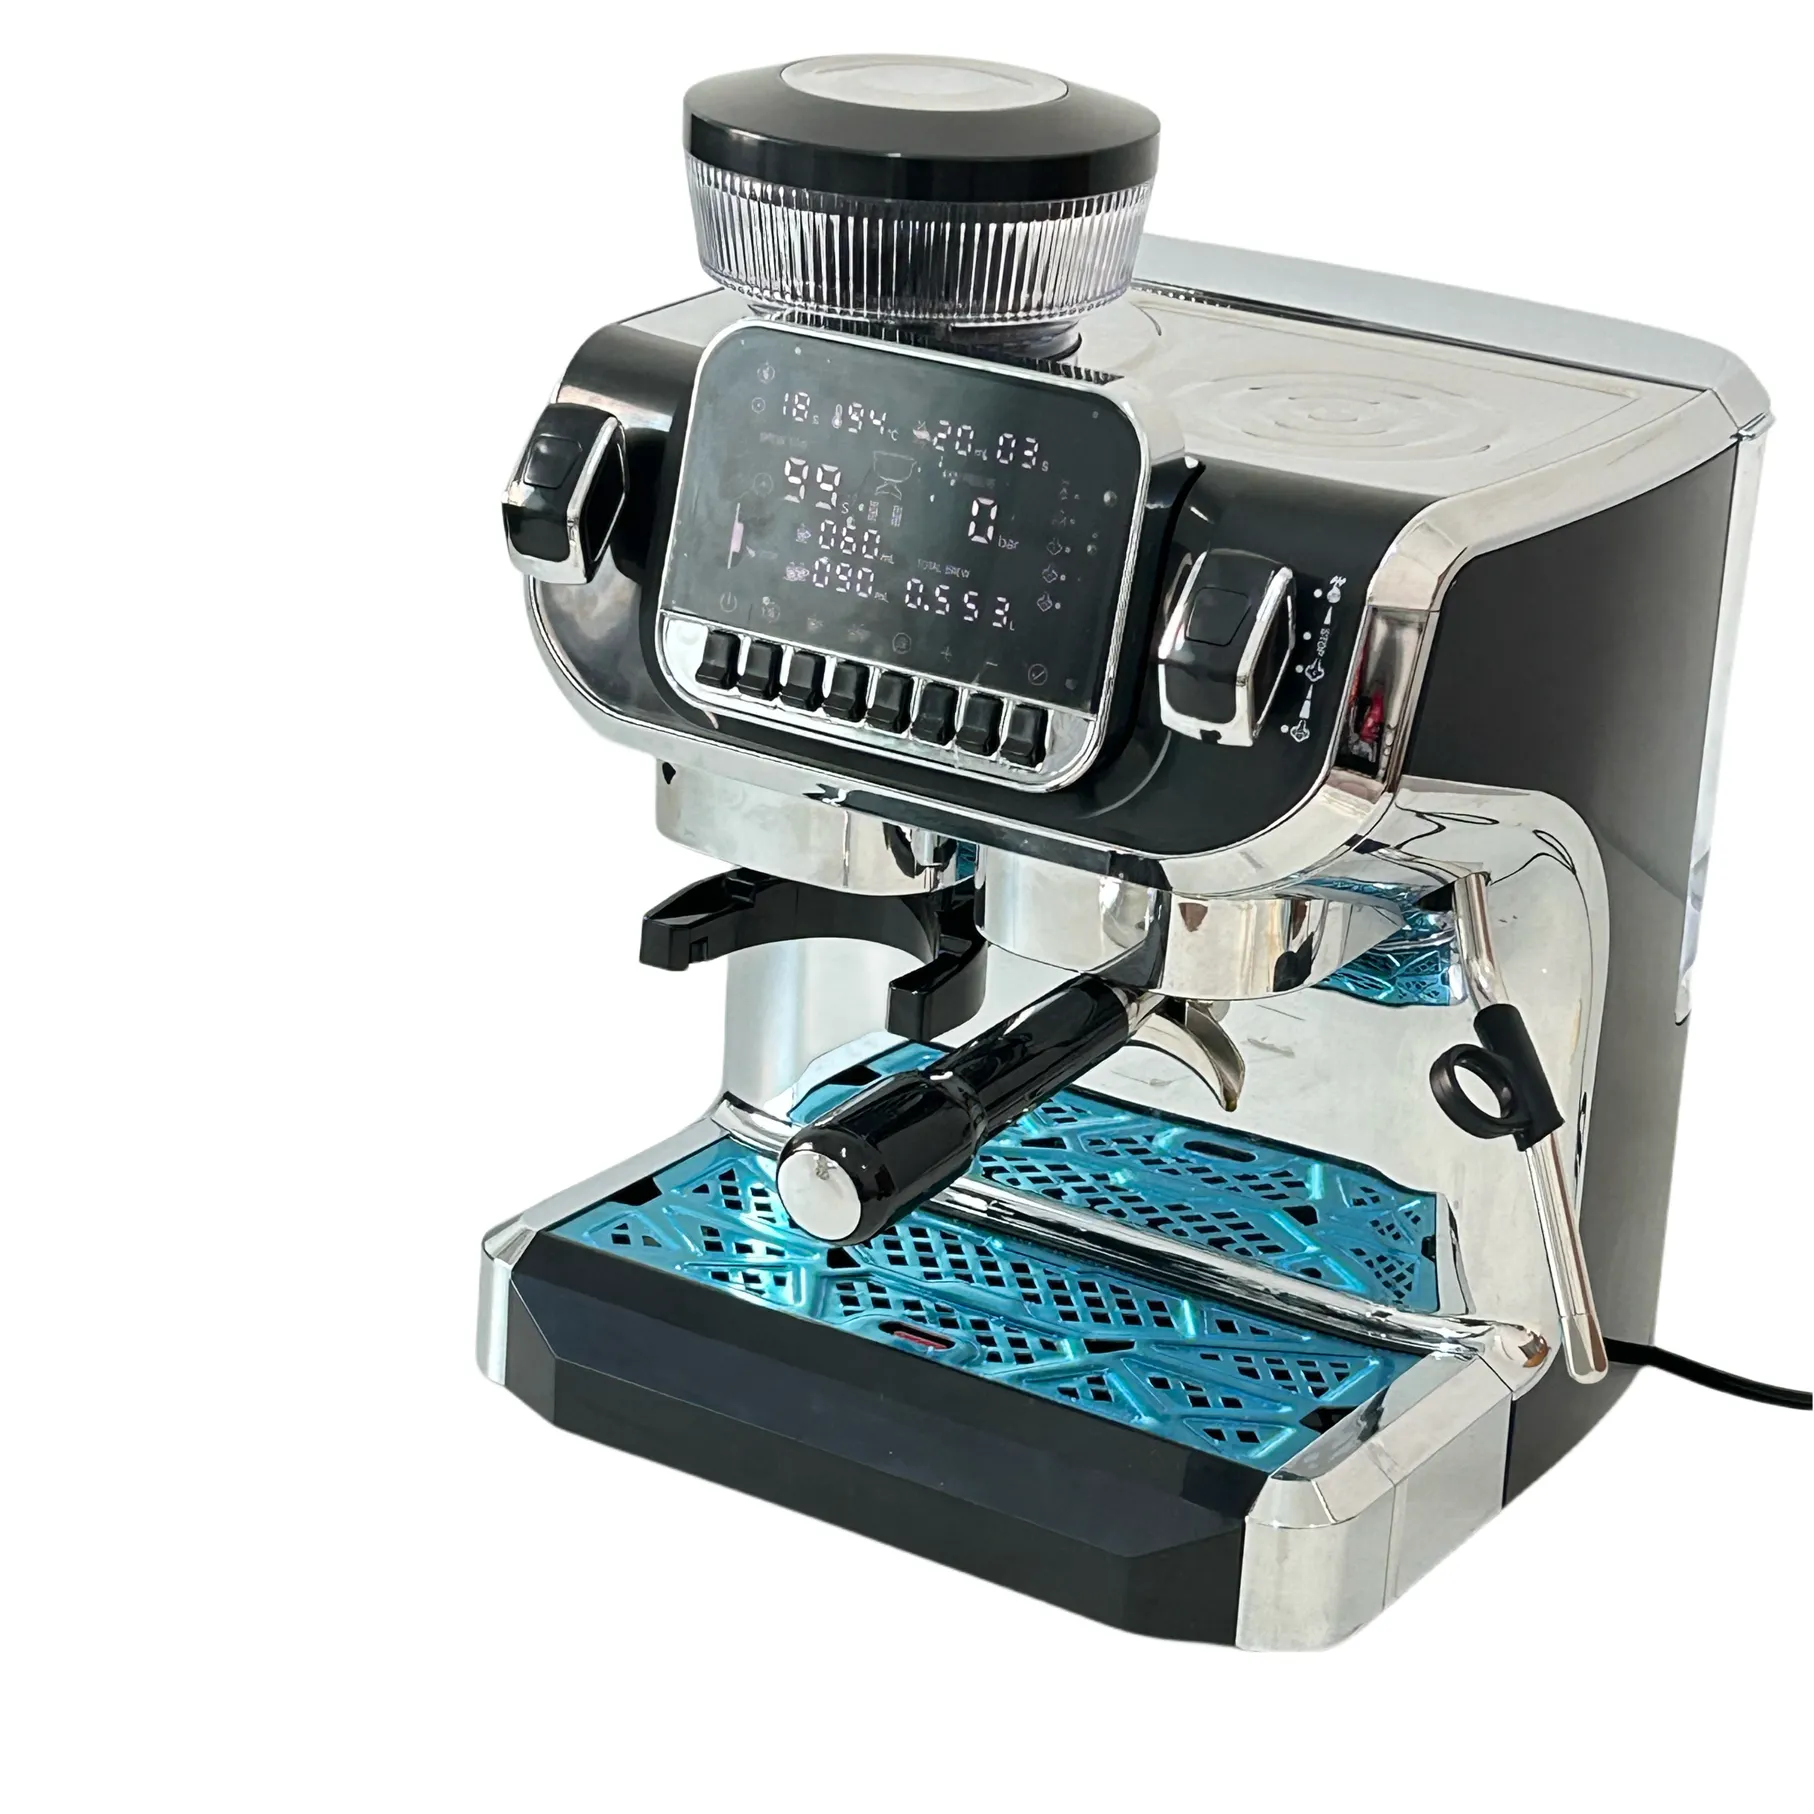 Household Automatic Commercial 3 IN 1 Espresso maschine mit großem Bildschirm und Doppel kessel